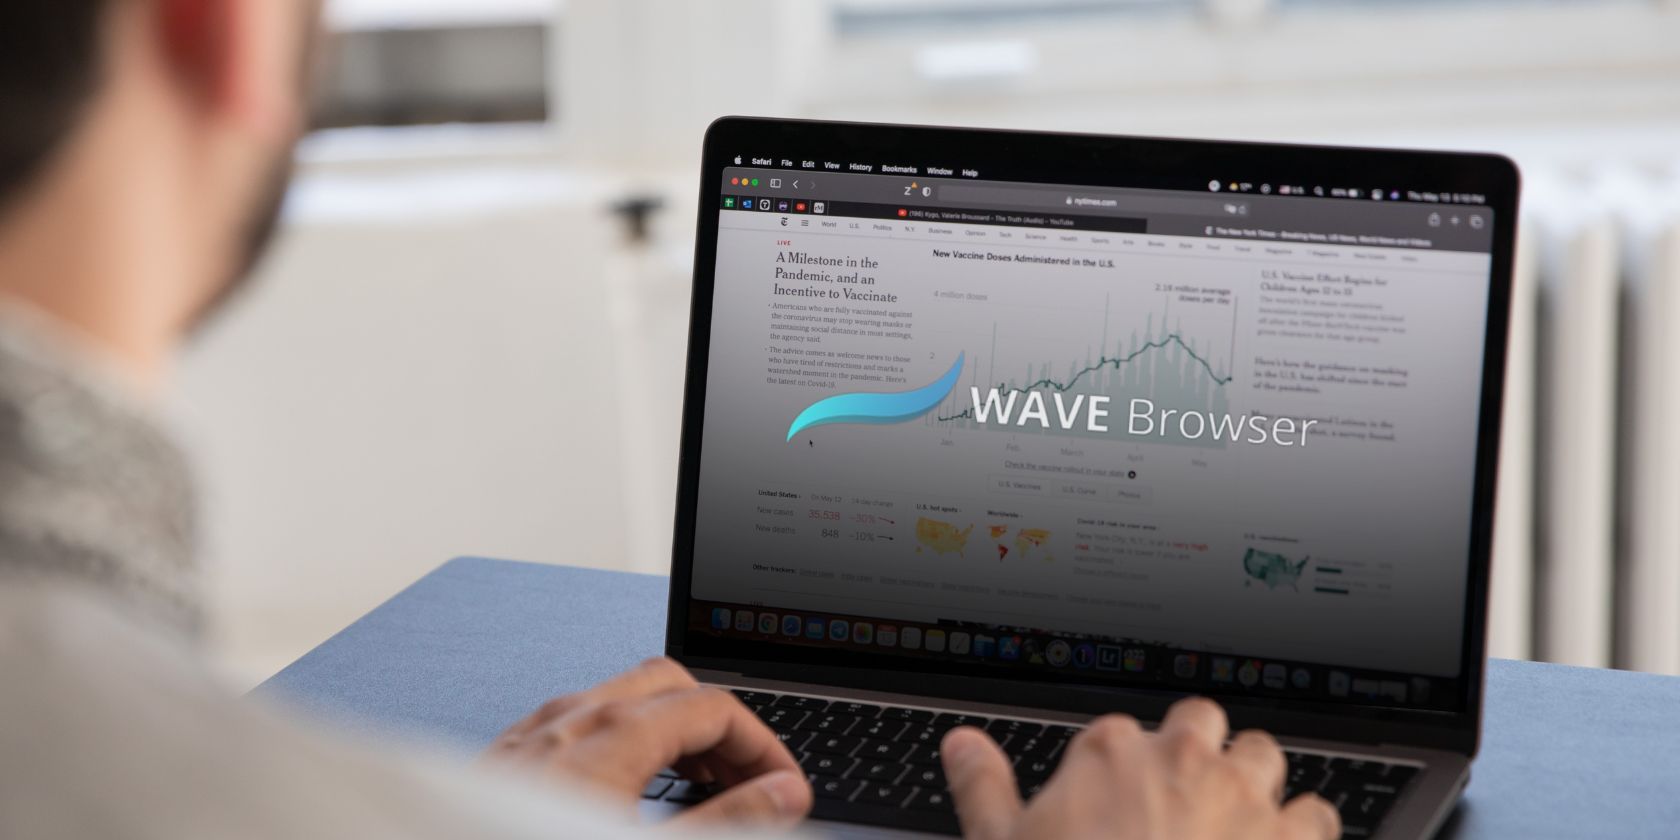 Cos’è il browser Wave? È un virus?